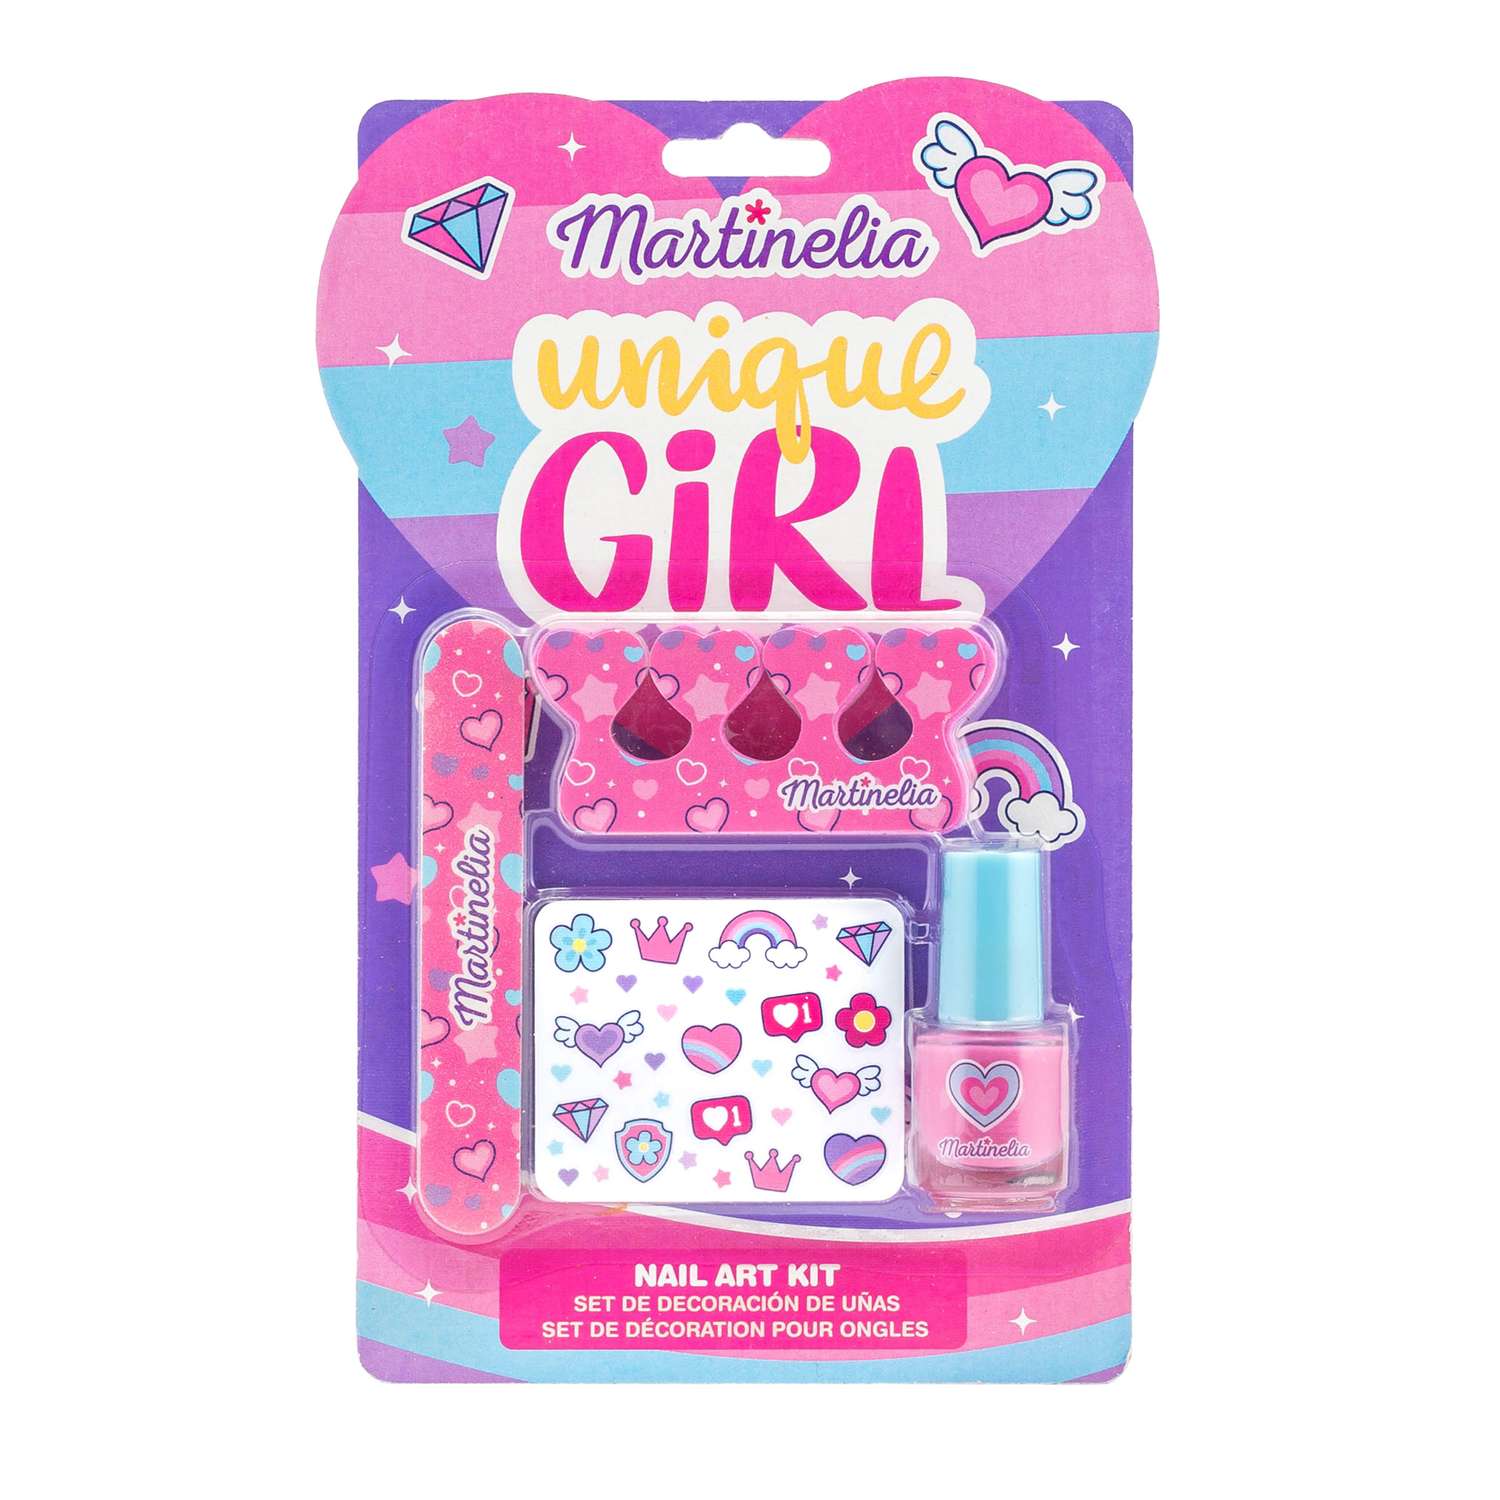 Набор для ногтей Martinelia Super girl мини - фото 1